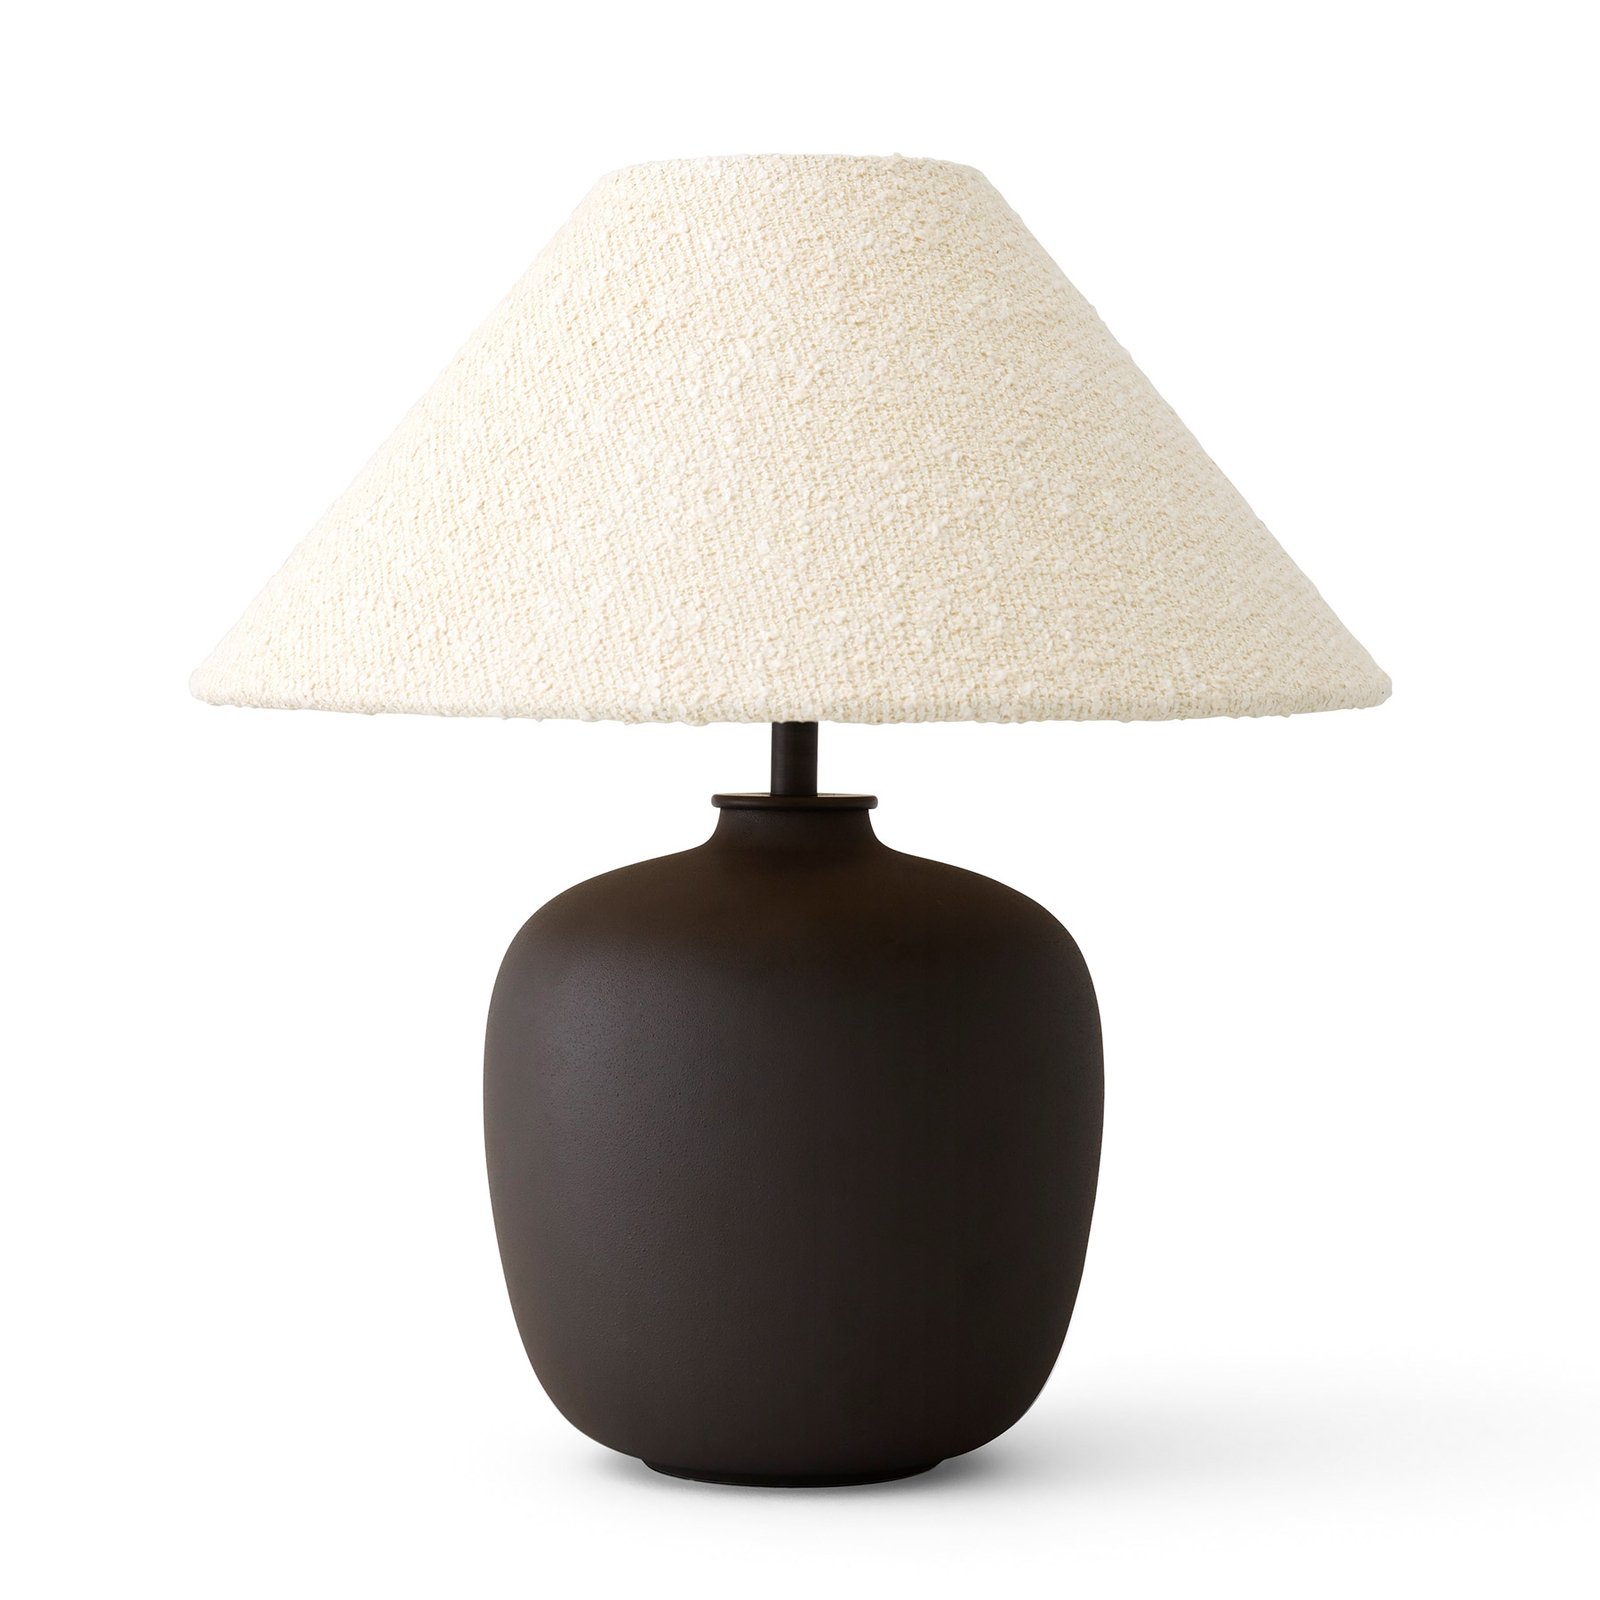 Audo Torso lampa stołowa LED, brązowa/biała, 37cm